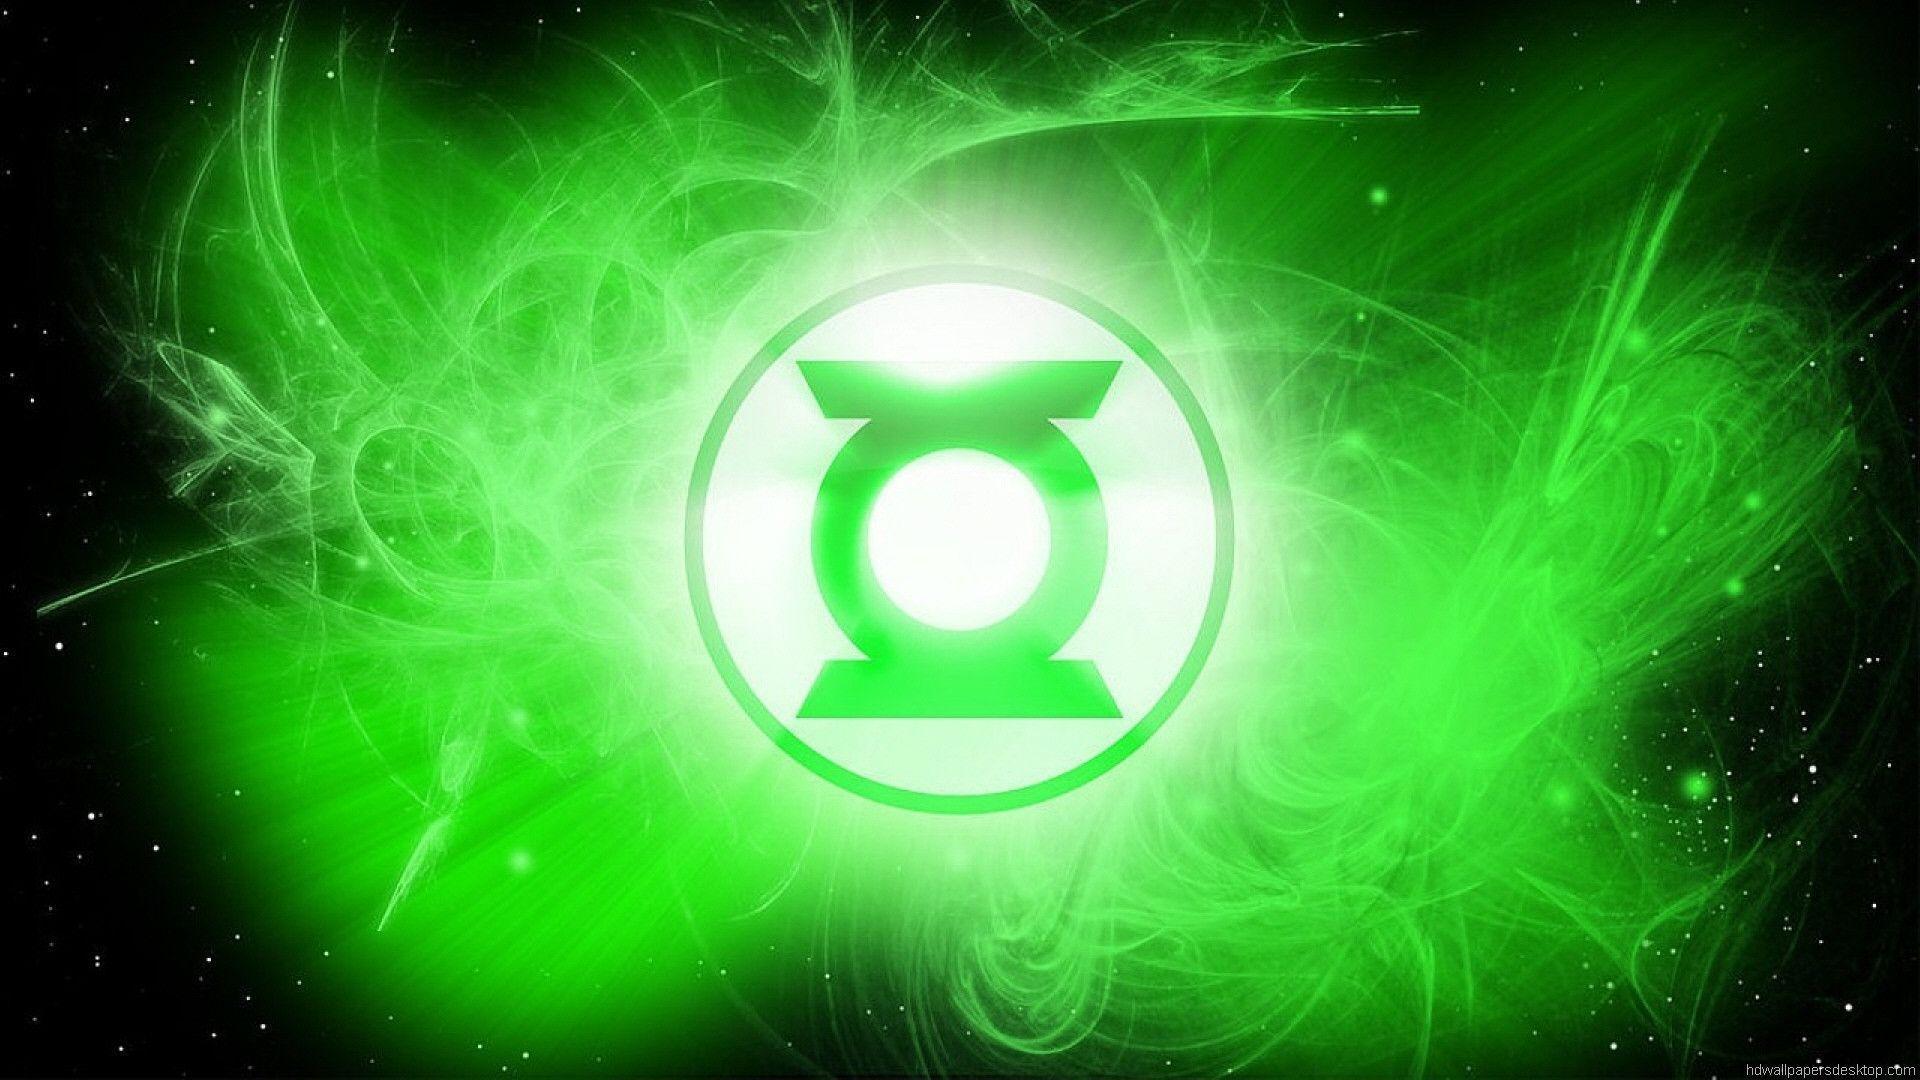 Green Lantern Wallpapers